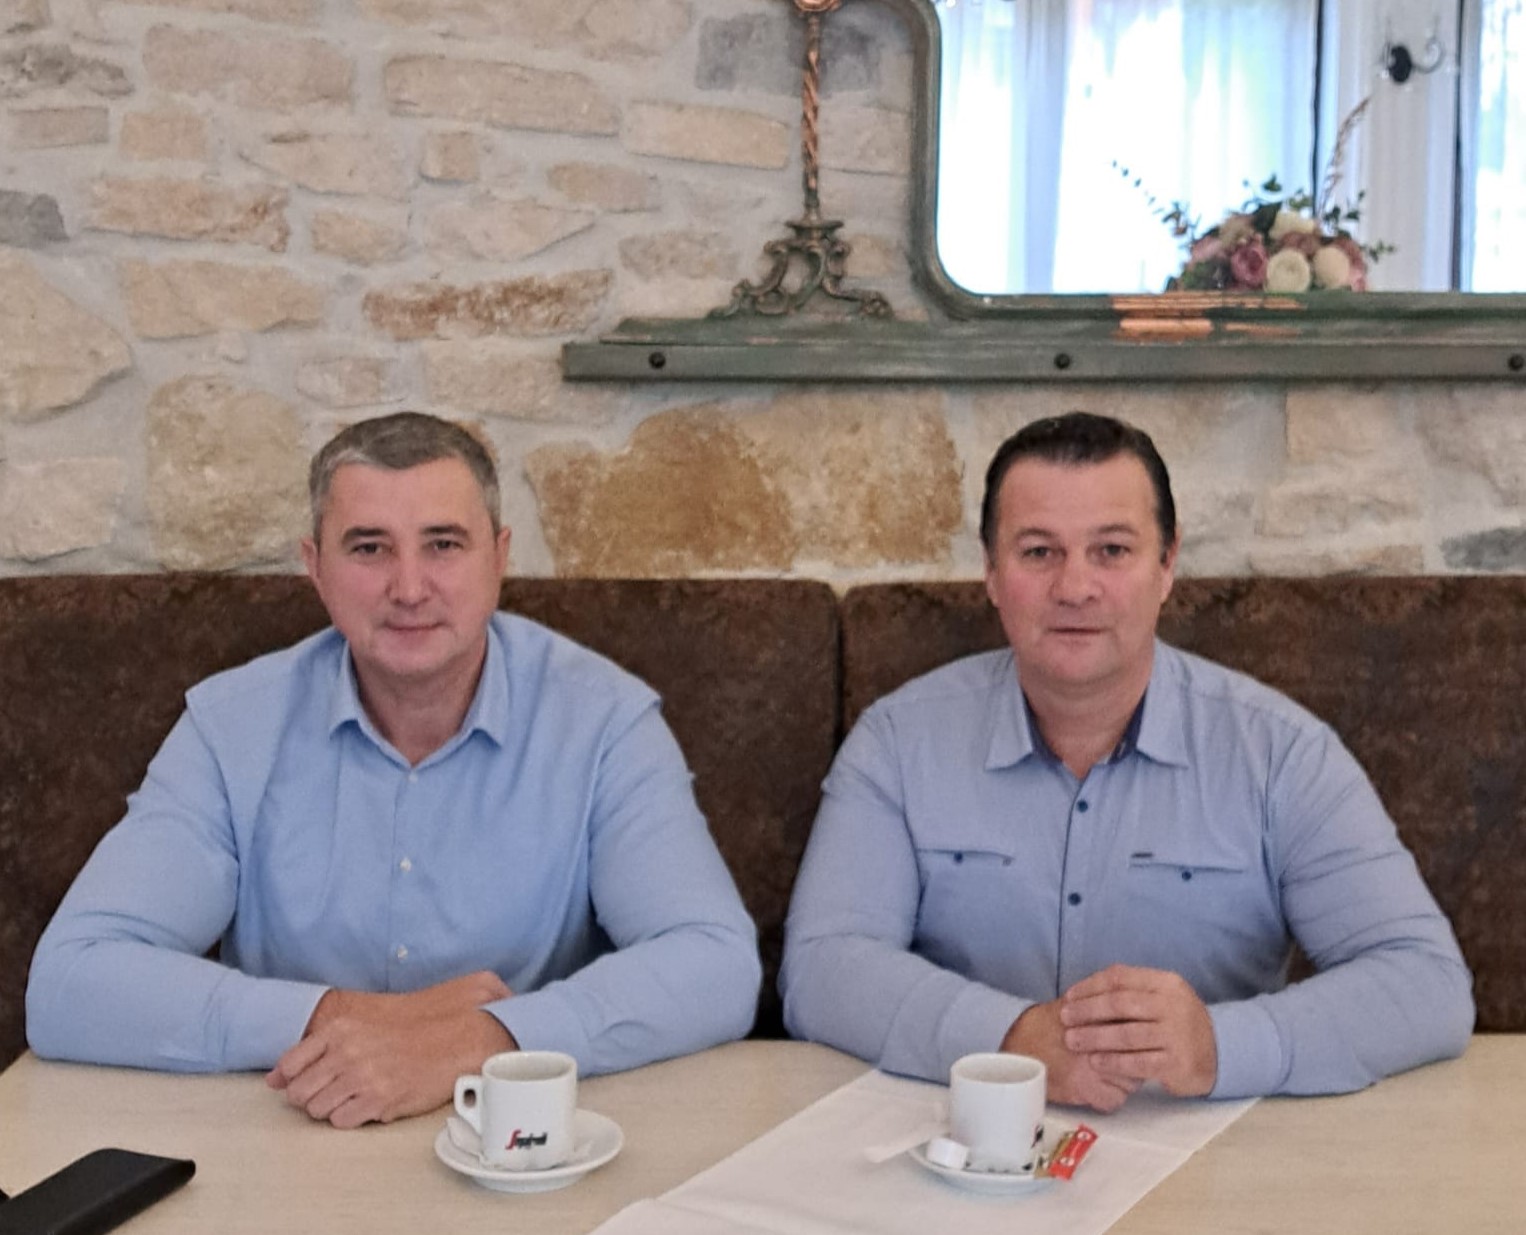  aur La Călărași? Vasile Miron, Fostul șef Al Poliției Gherla S-a întâlnit Cu Adrian Nap, Pentru ”un Proiect Politic”